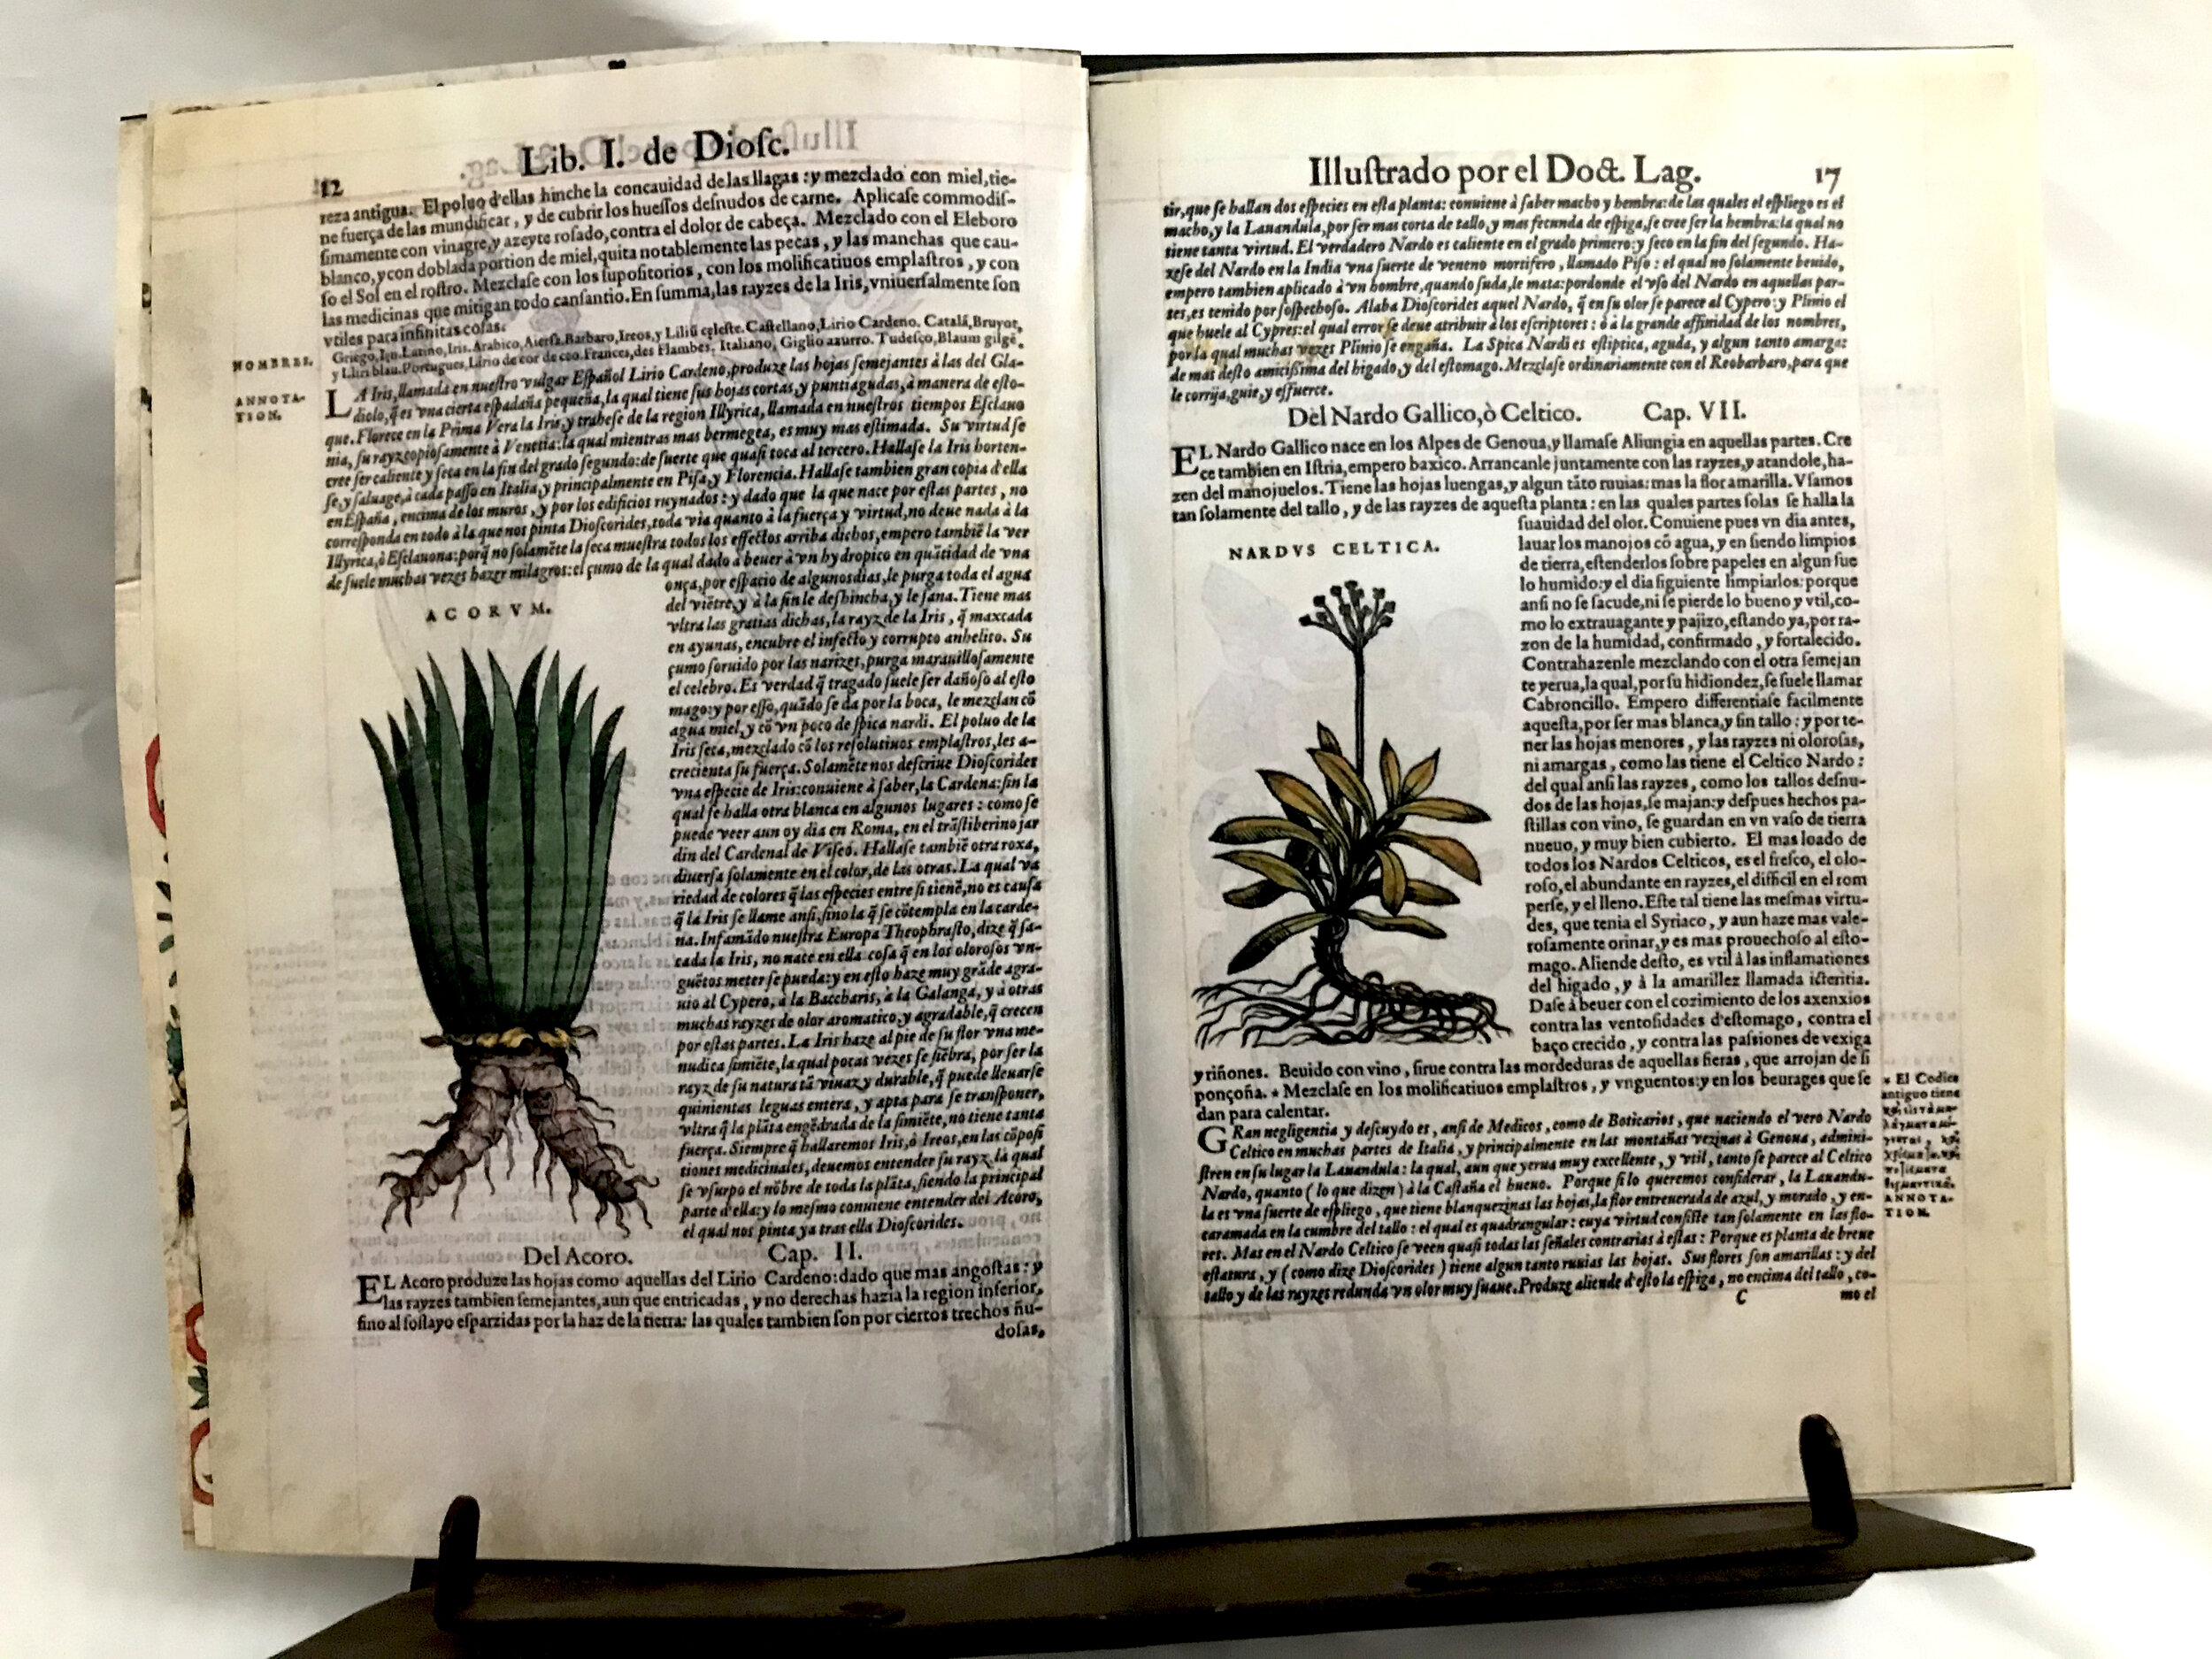 Facsimile “De Materia Medica” By Dioscorides 1555 